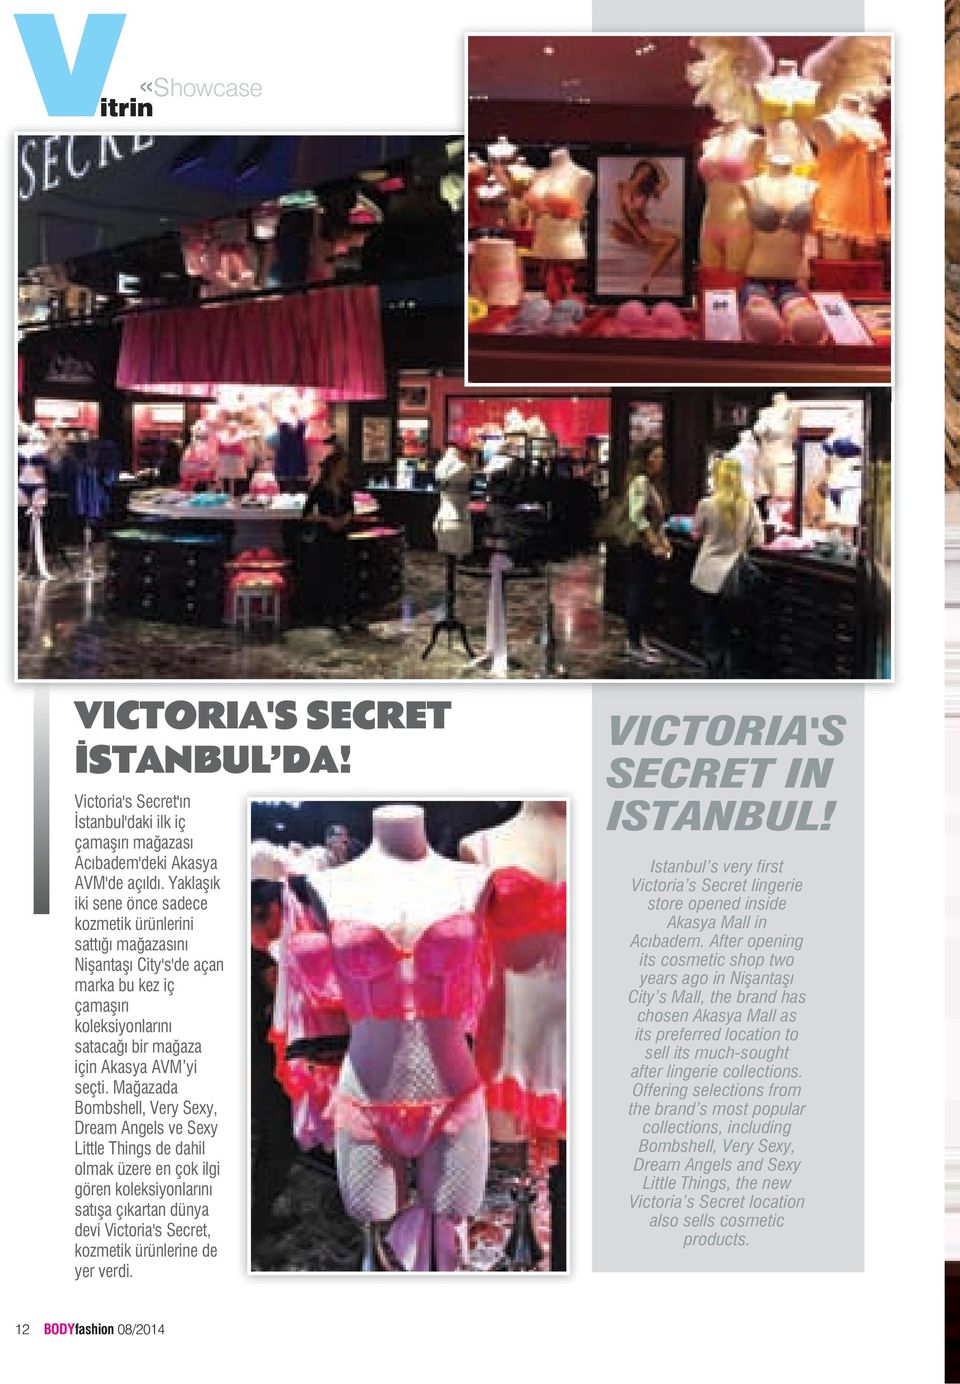 Mağazada Bombshell, Very Sexy, Dream Angels ve Sexy Little Things de dahil olmak üzere en çok ilgi gören koleksiyonlarını satışa çıkartan dünya devi Victoria's Secret, kozmetik ürünlerine de yer